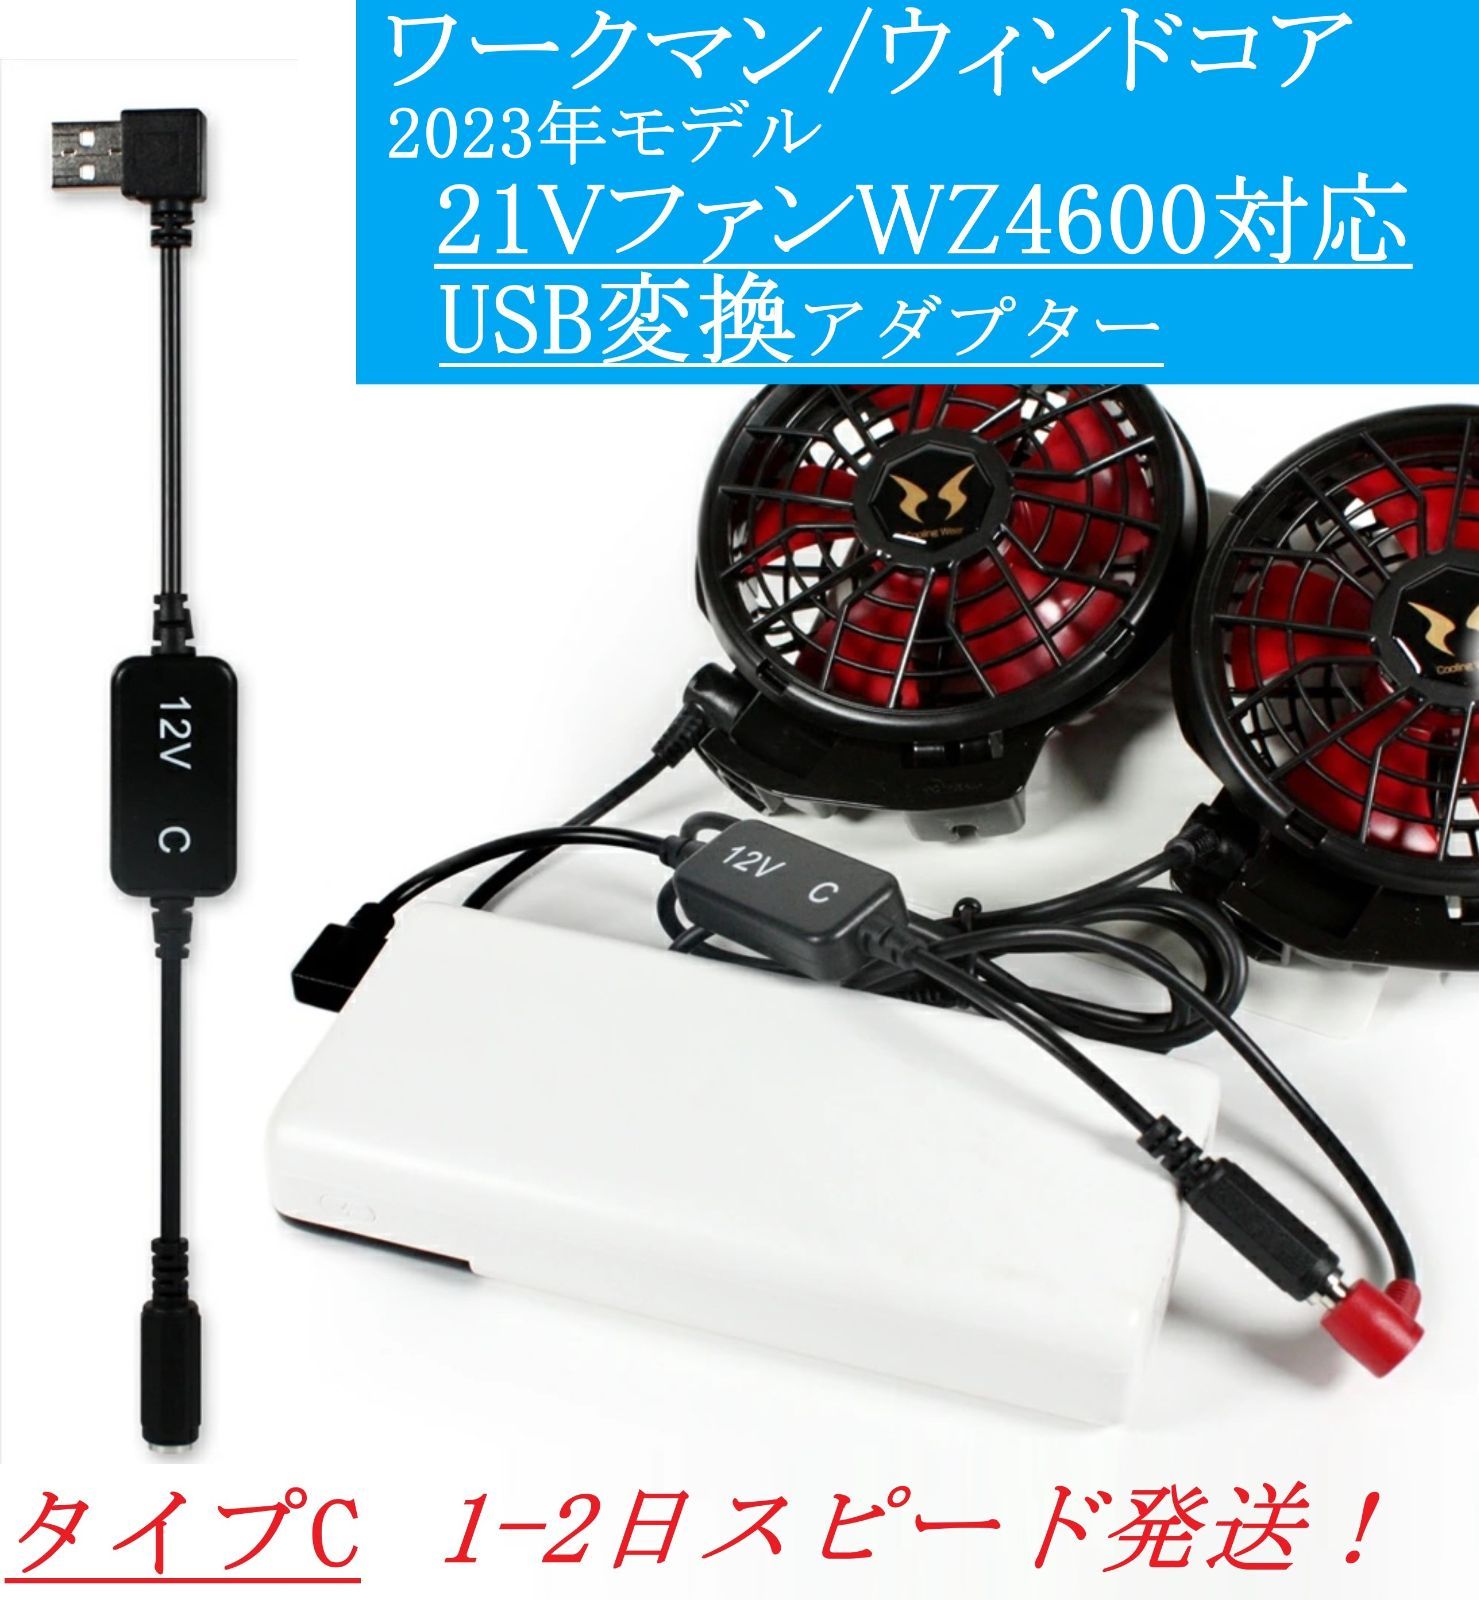 ウィンドコア 新型 WZ4600 21Vファン USB変換アダプター 12V昇圧 